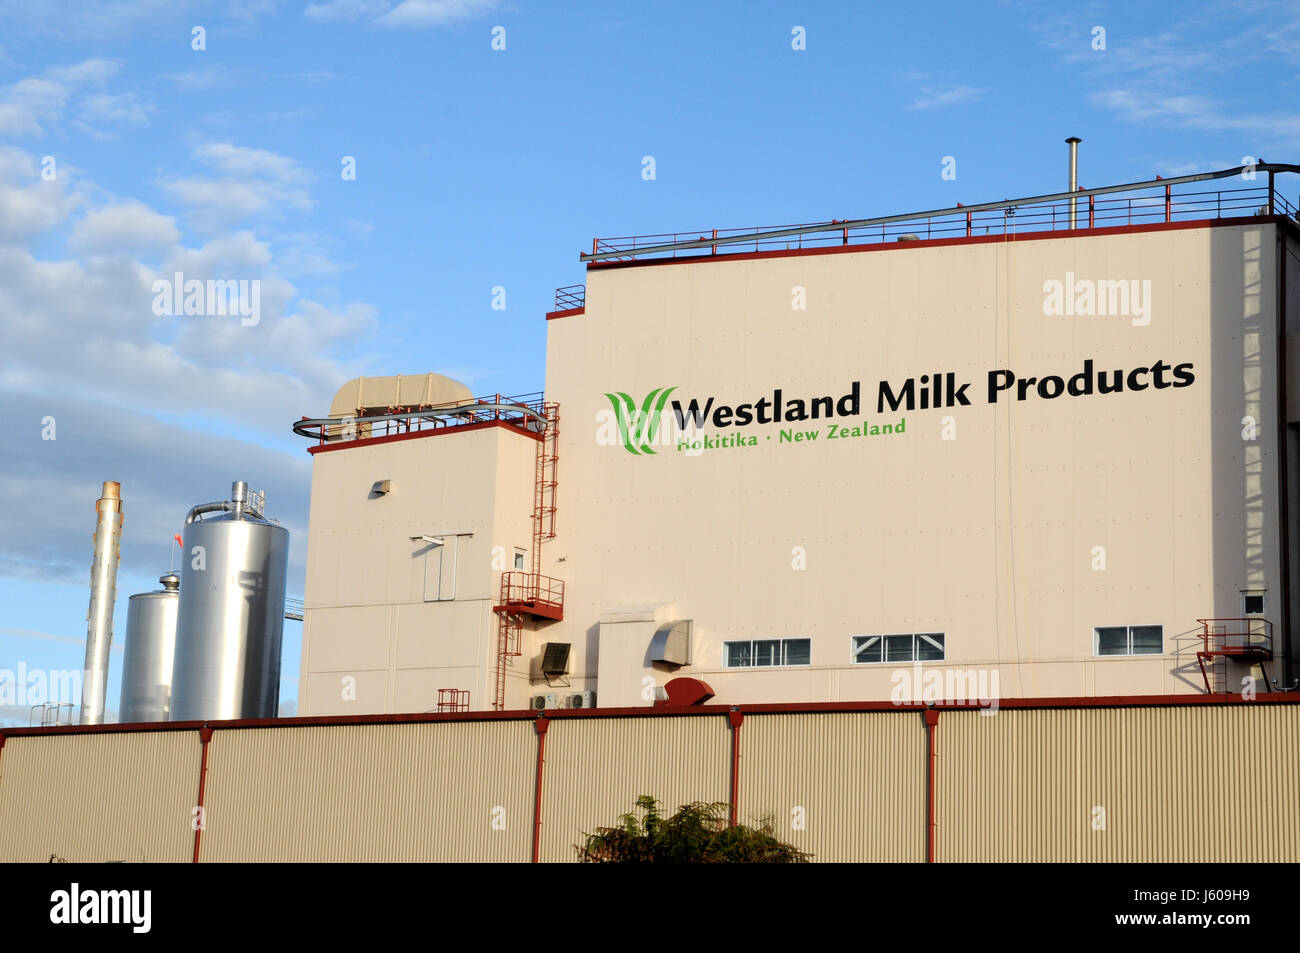 Un prosessing lait usine dans la ville d'Hokitika Nouvelle Zélande, île du Sud. Banque D'Images